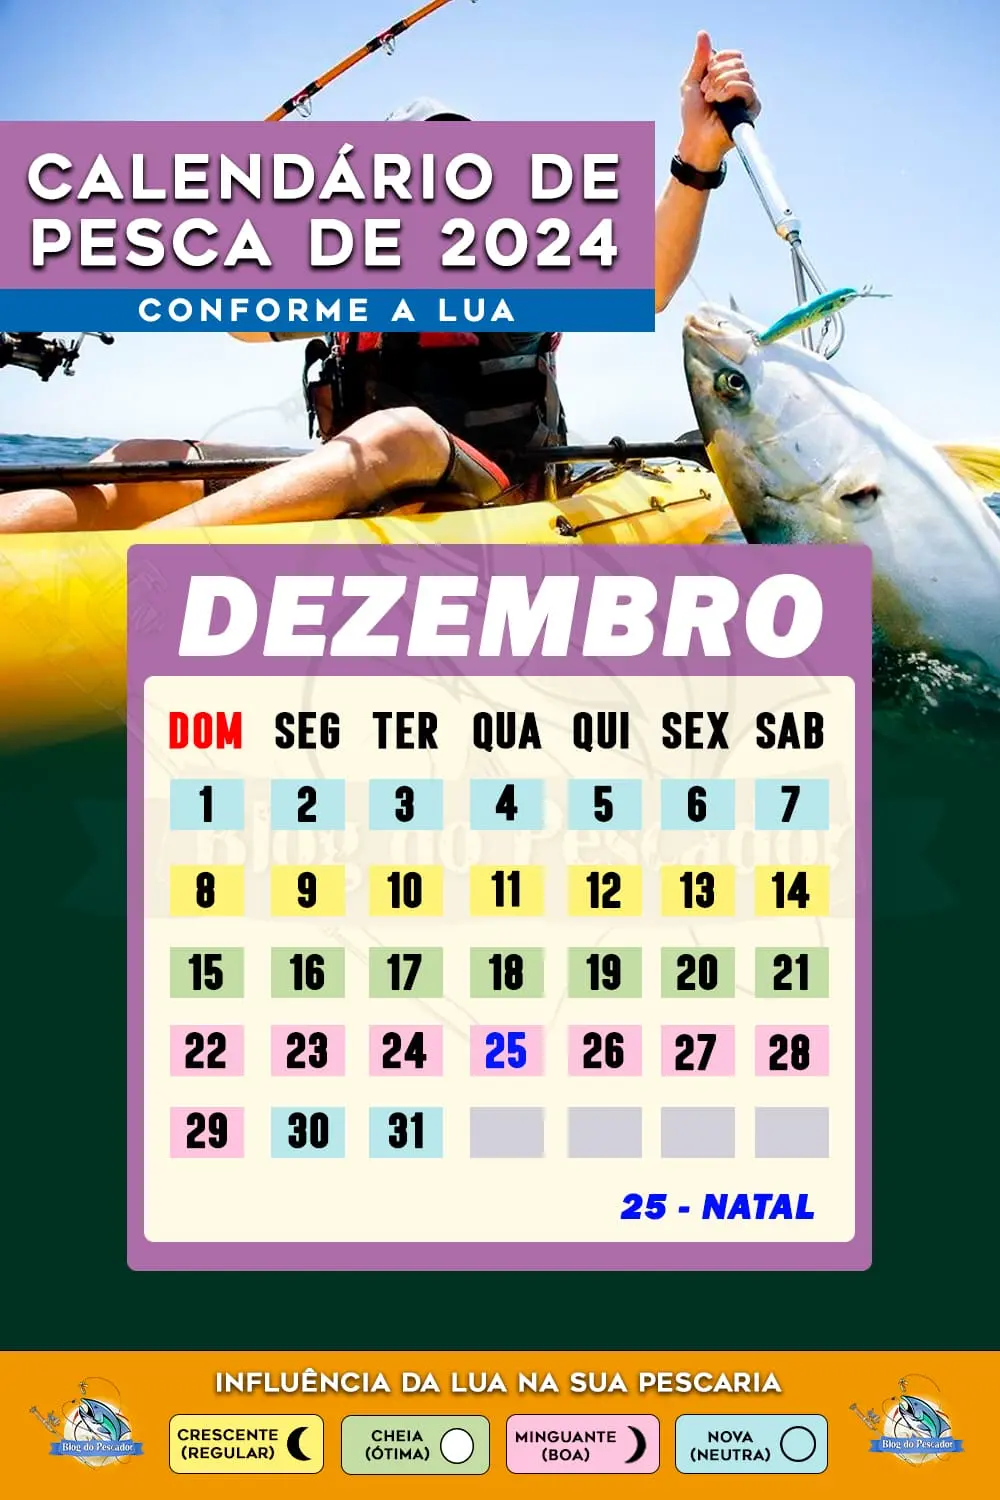 Calendário de pesca de dezembro de 2024